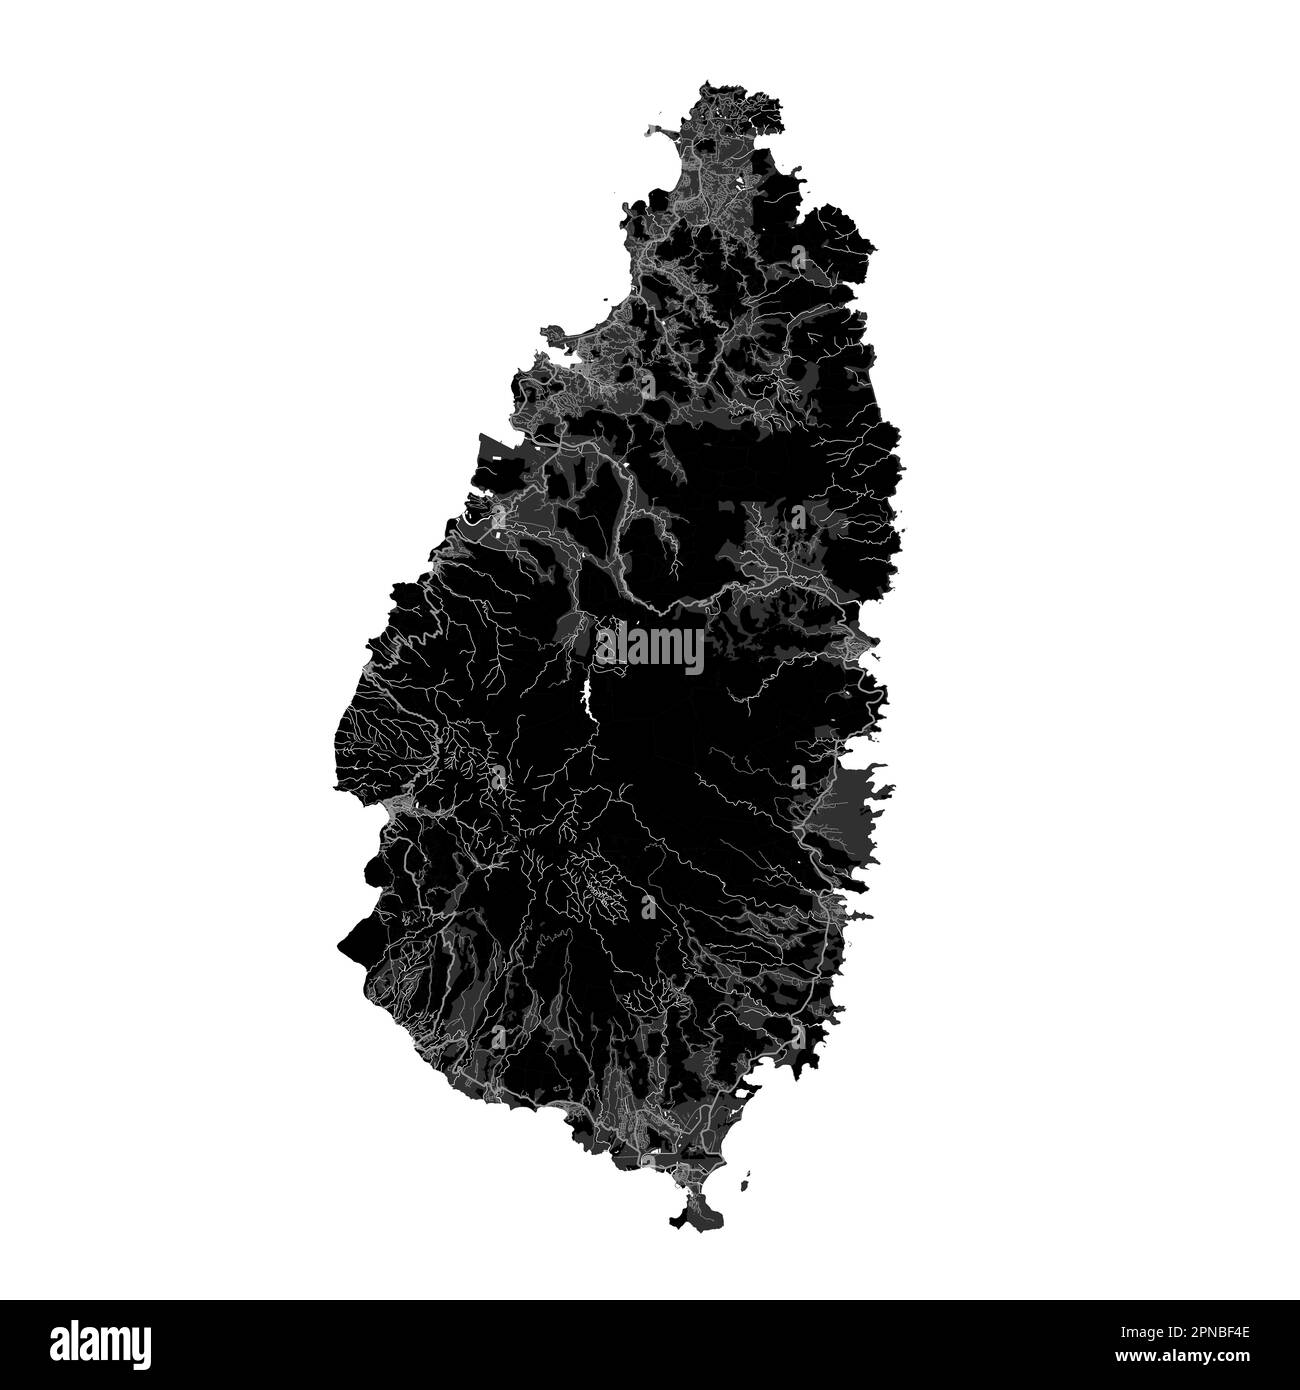 Mappa nera di Santa Lucia, paese dell'isola caraibica. Mappa dettagliata con confine amministrativo, costa, mare e foreste, città e strade. Illustrazione Vettoriale